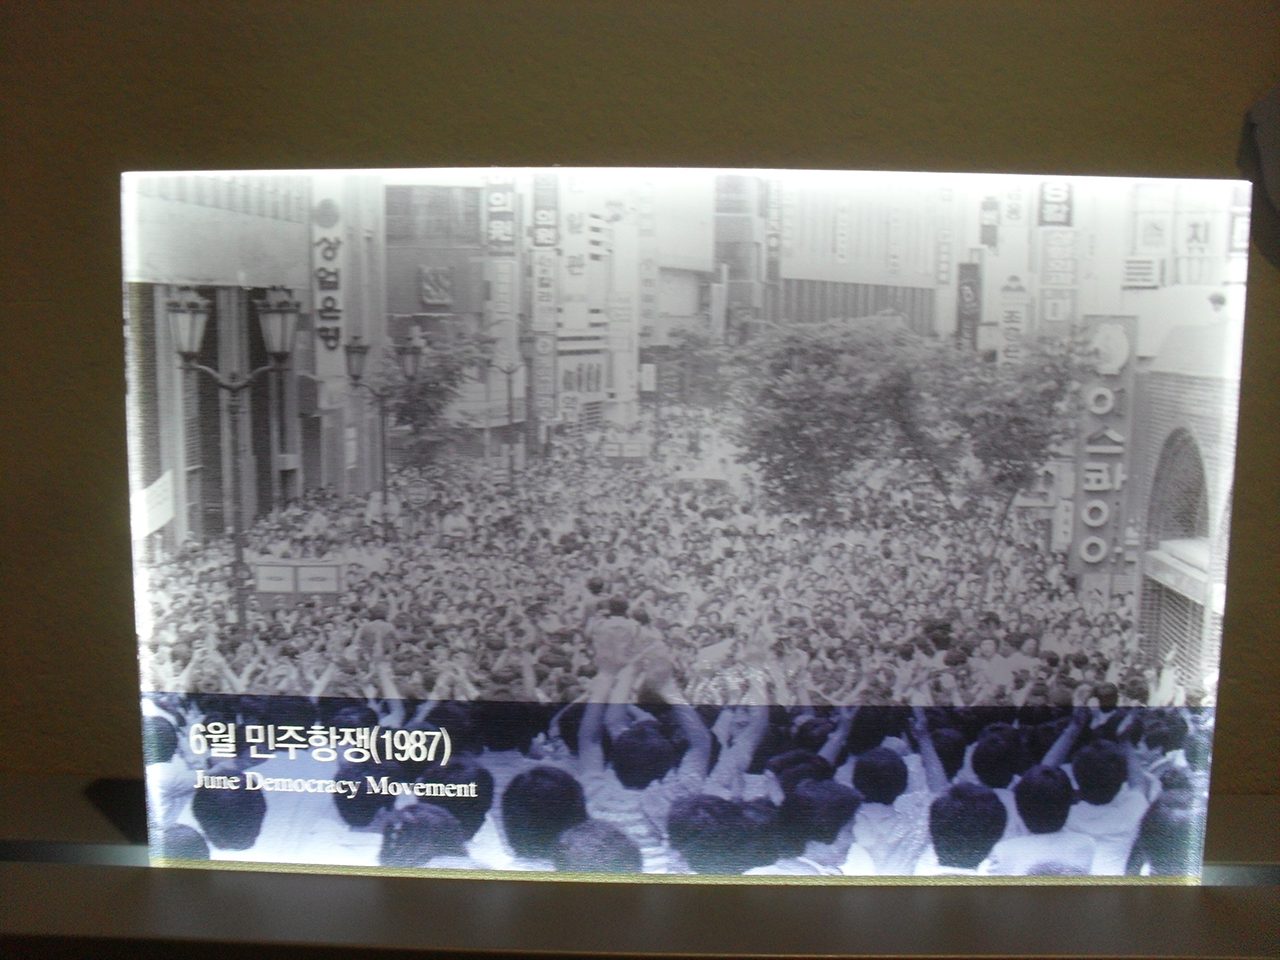 6월항쟁. 길 양쪽에 은행들이 있는 것으로 보아 명동 시위를 찍은 사진 같다. 서울 광화문광장 동편의 대한민국역사박물관에 전시된 사진.